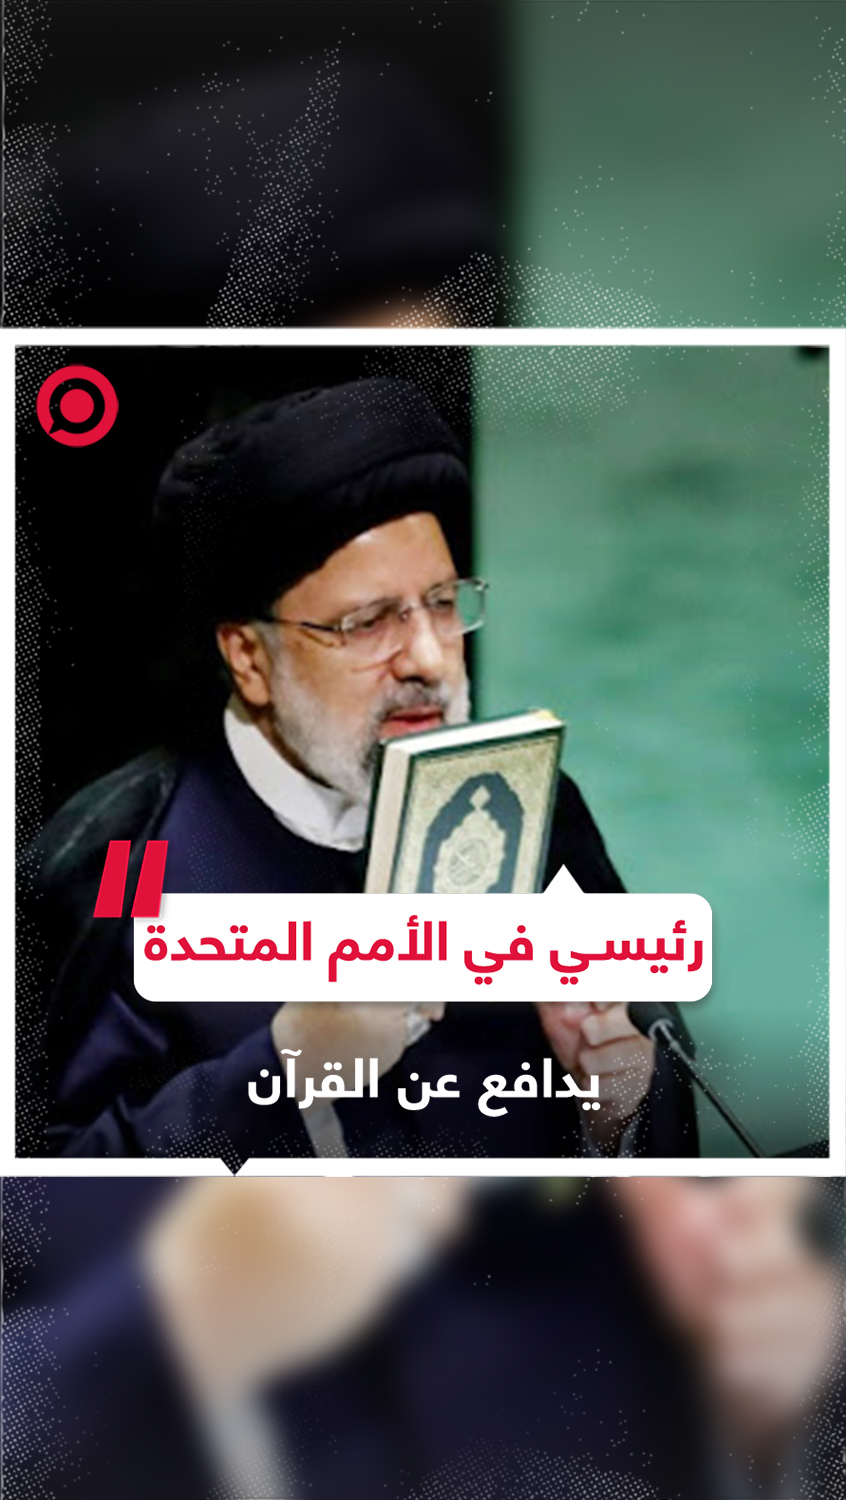 لقطات سابقة للرئيس الإيراني الراحل إبراهيم رئيسي في الأمم المتحدة يدافع عن القرآن